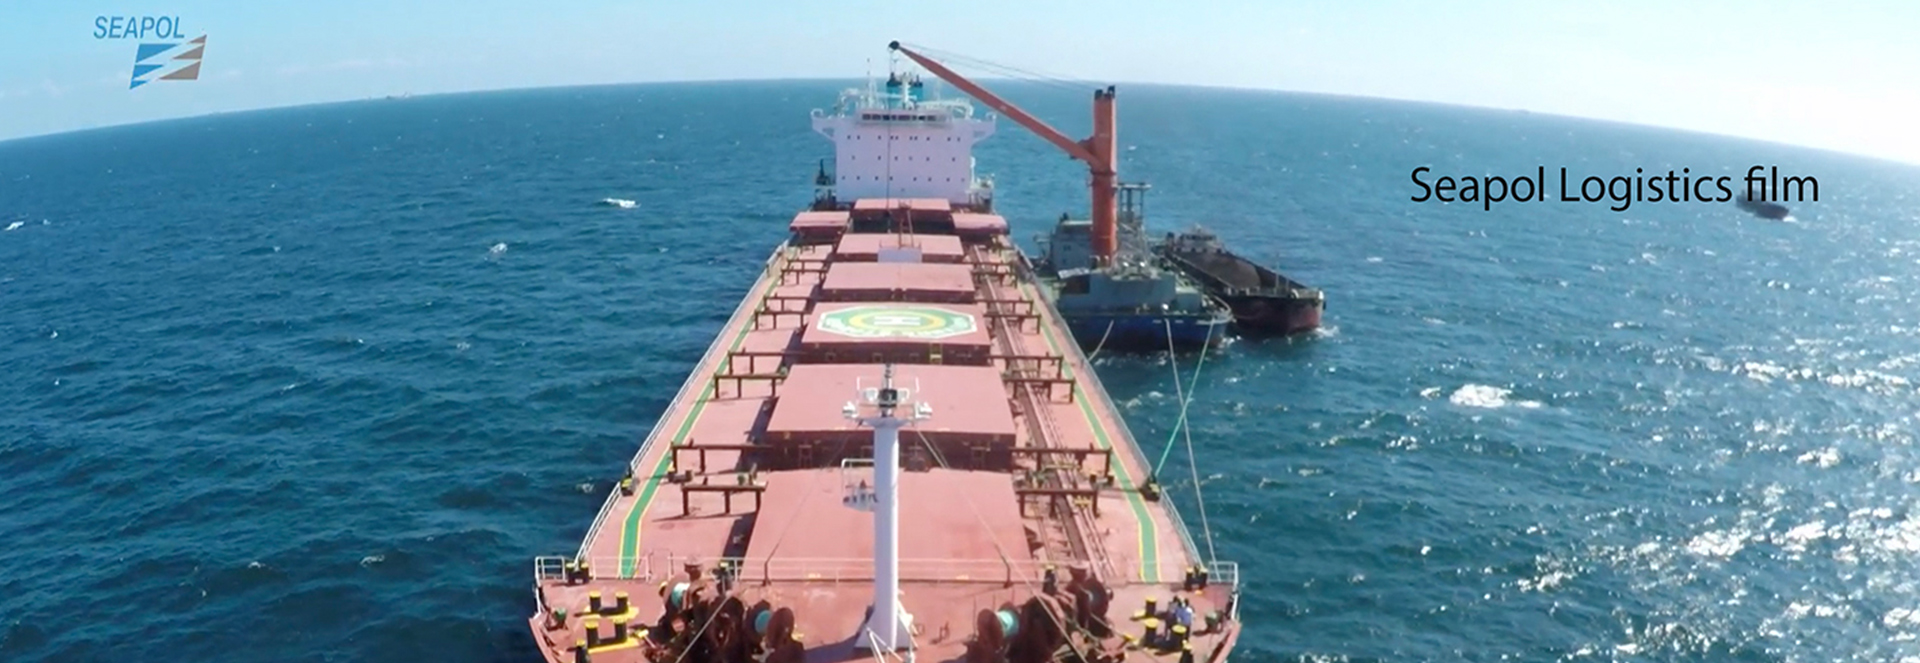 corporate-seapol-logistics-films